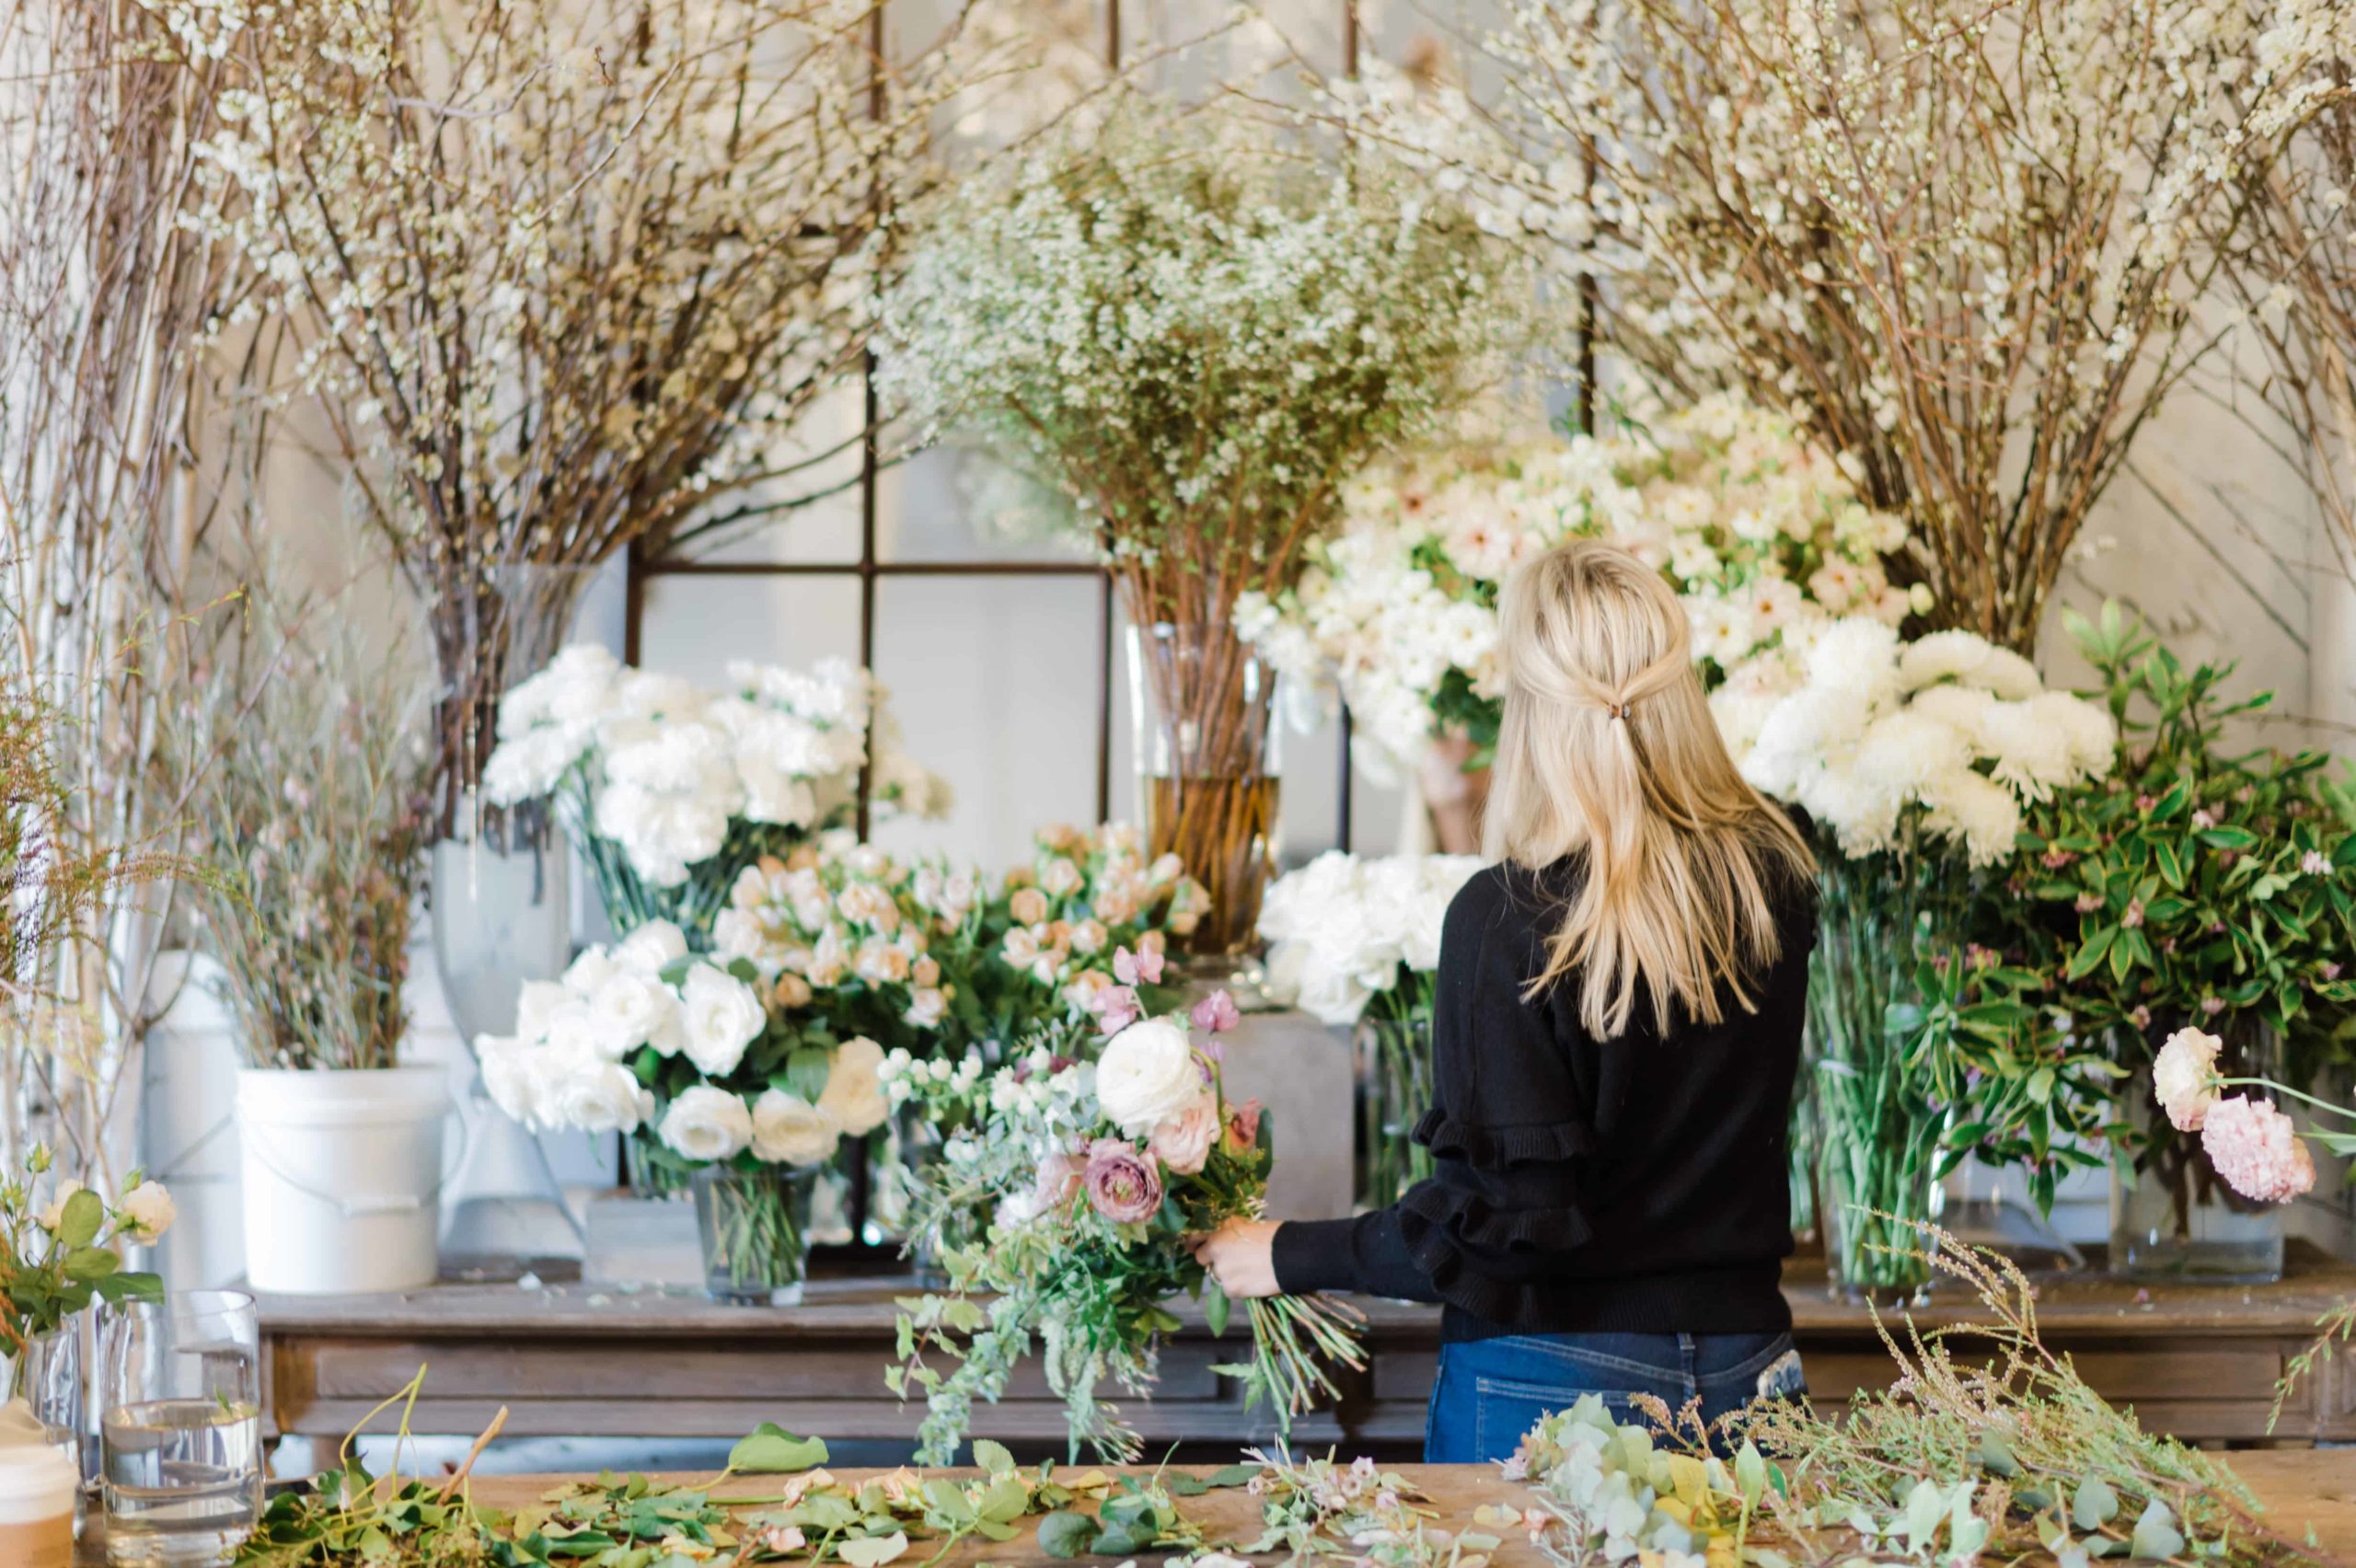 Wedding florist working with arrangements